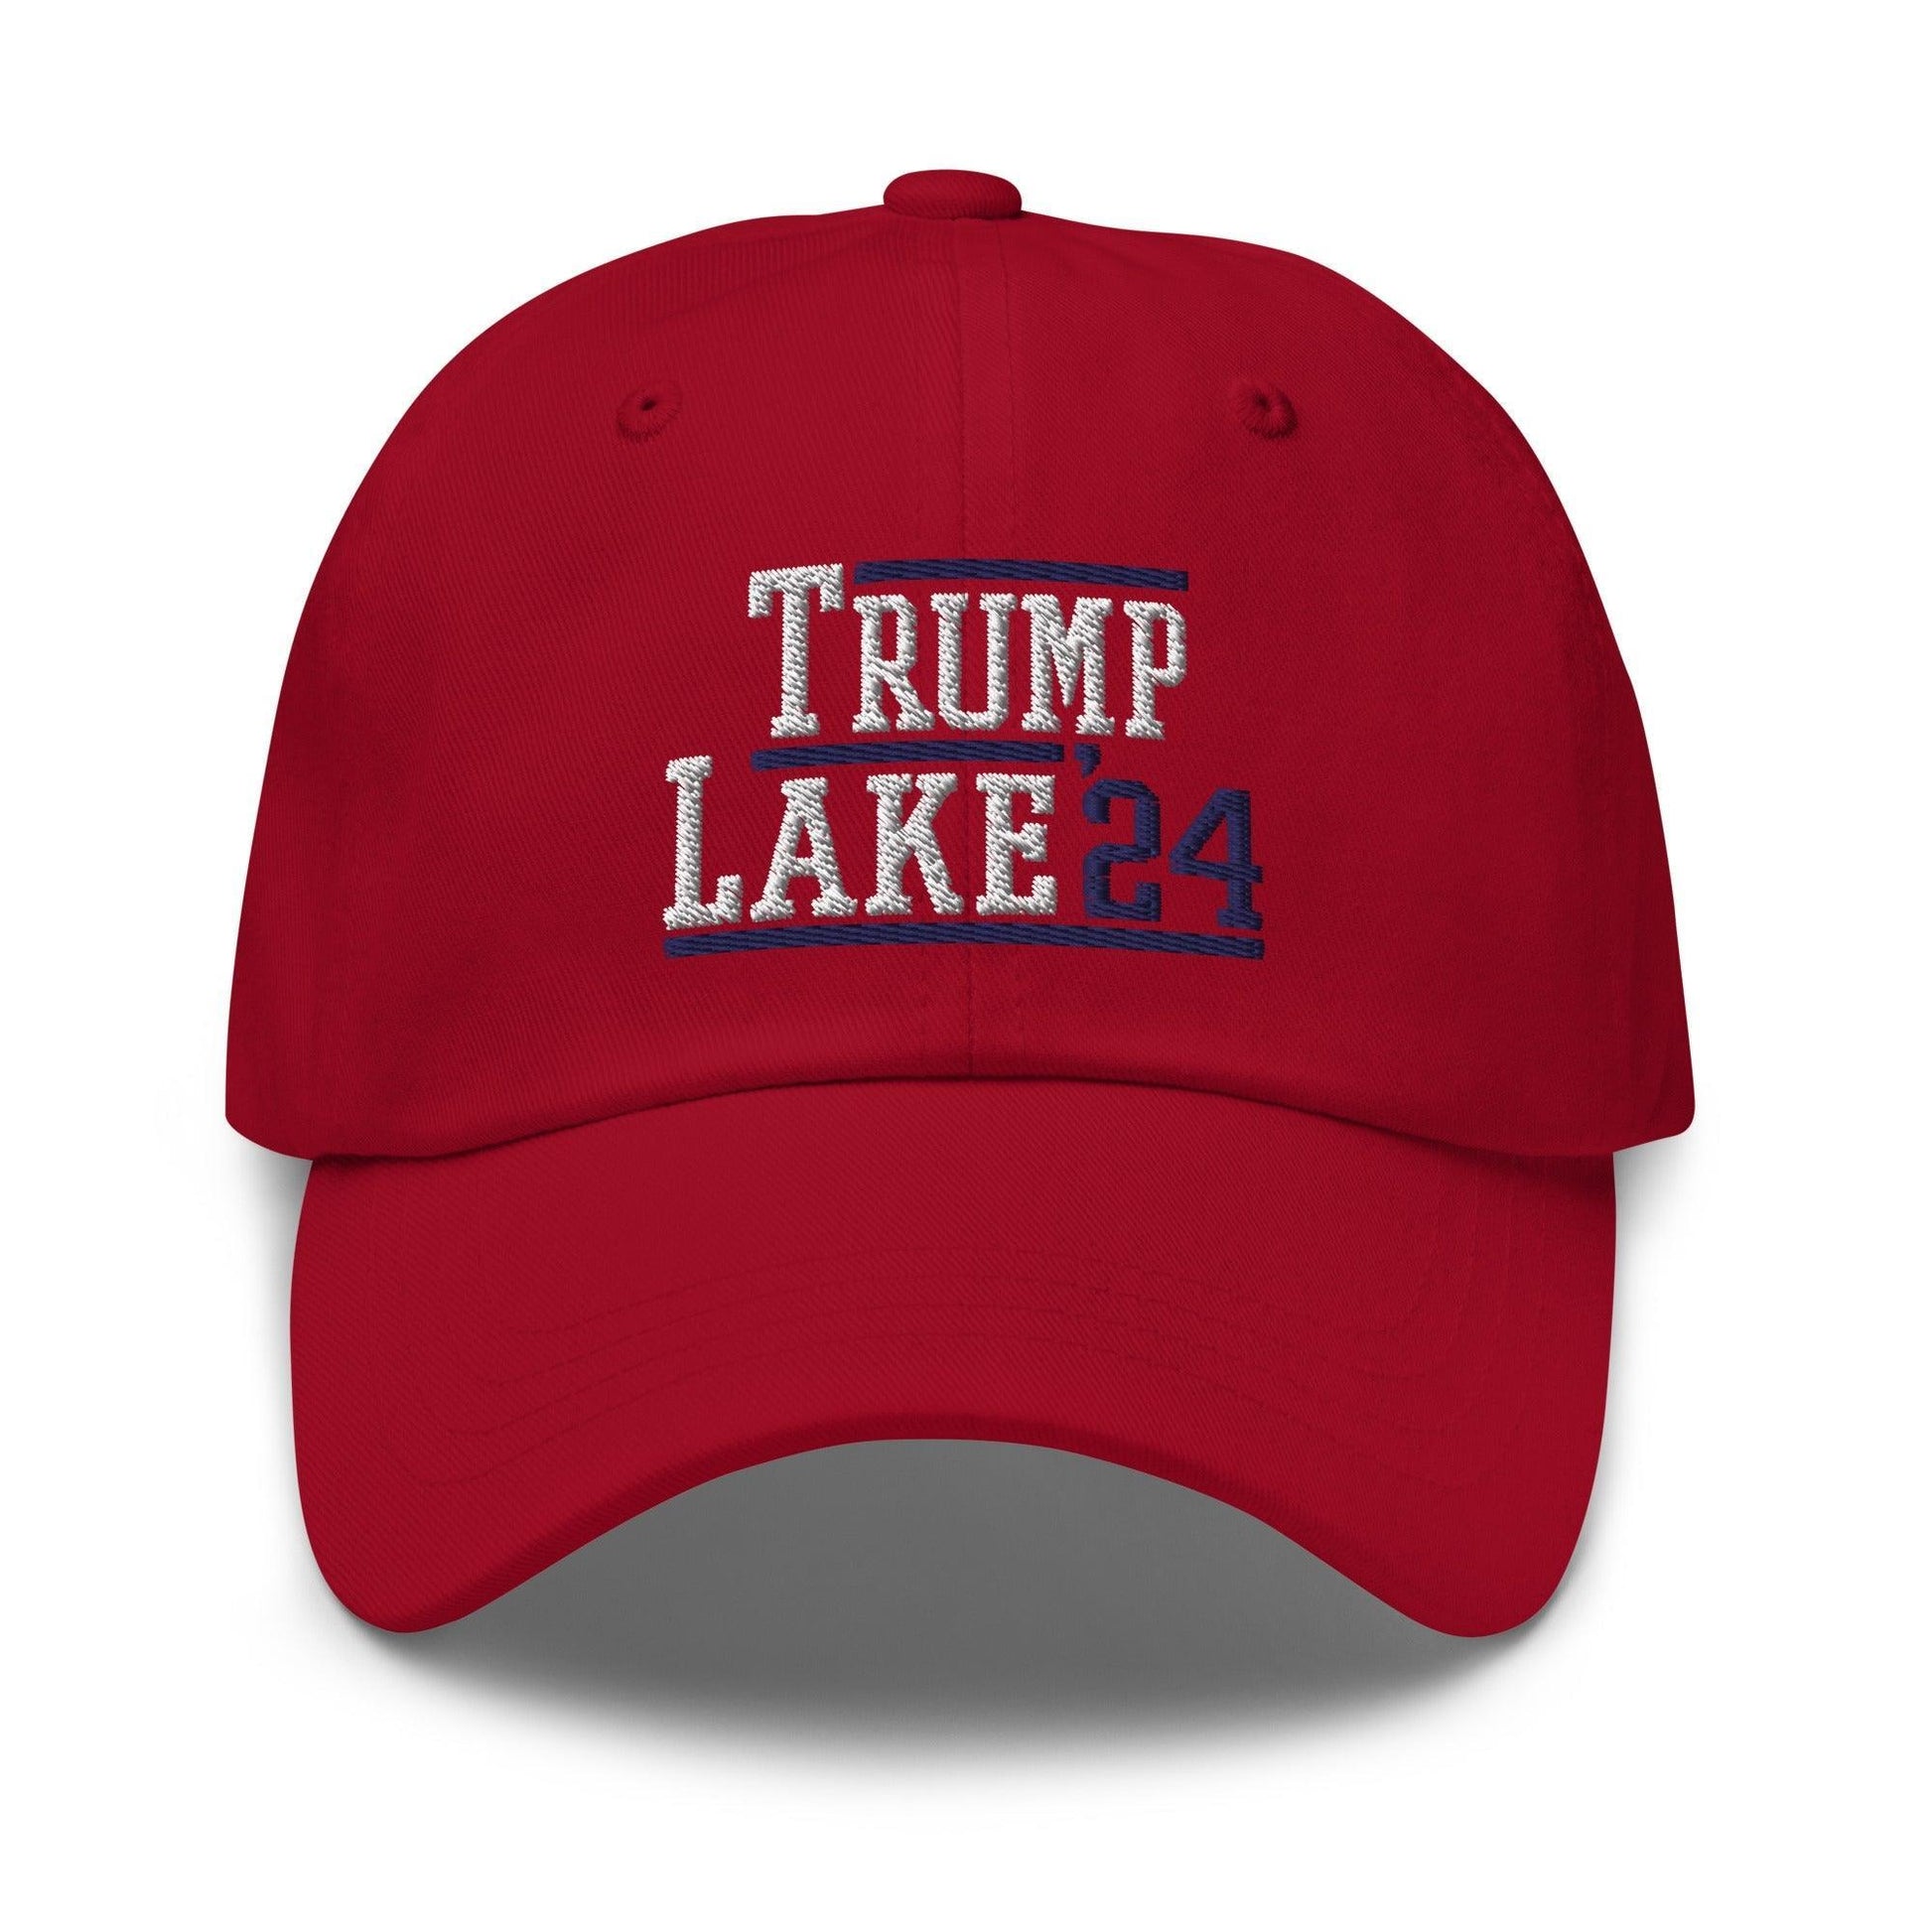 Donald Trump Kari Lake 2024 Dad Hat Cranberry